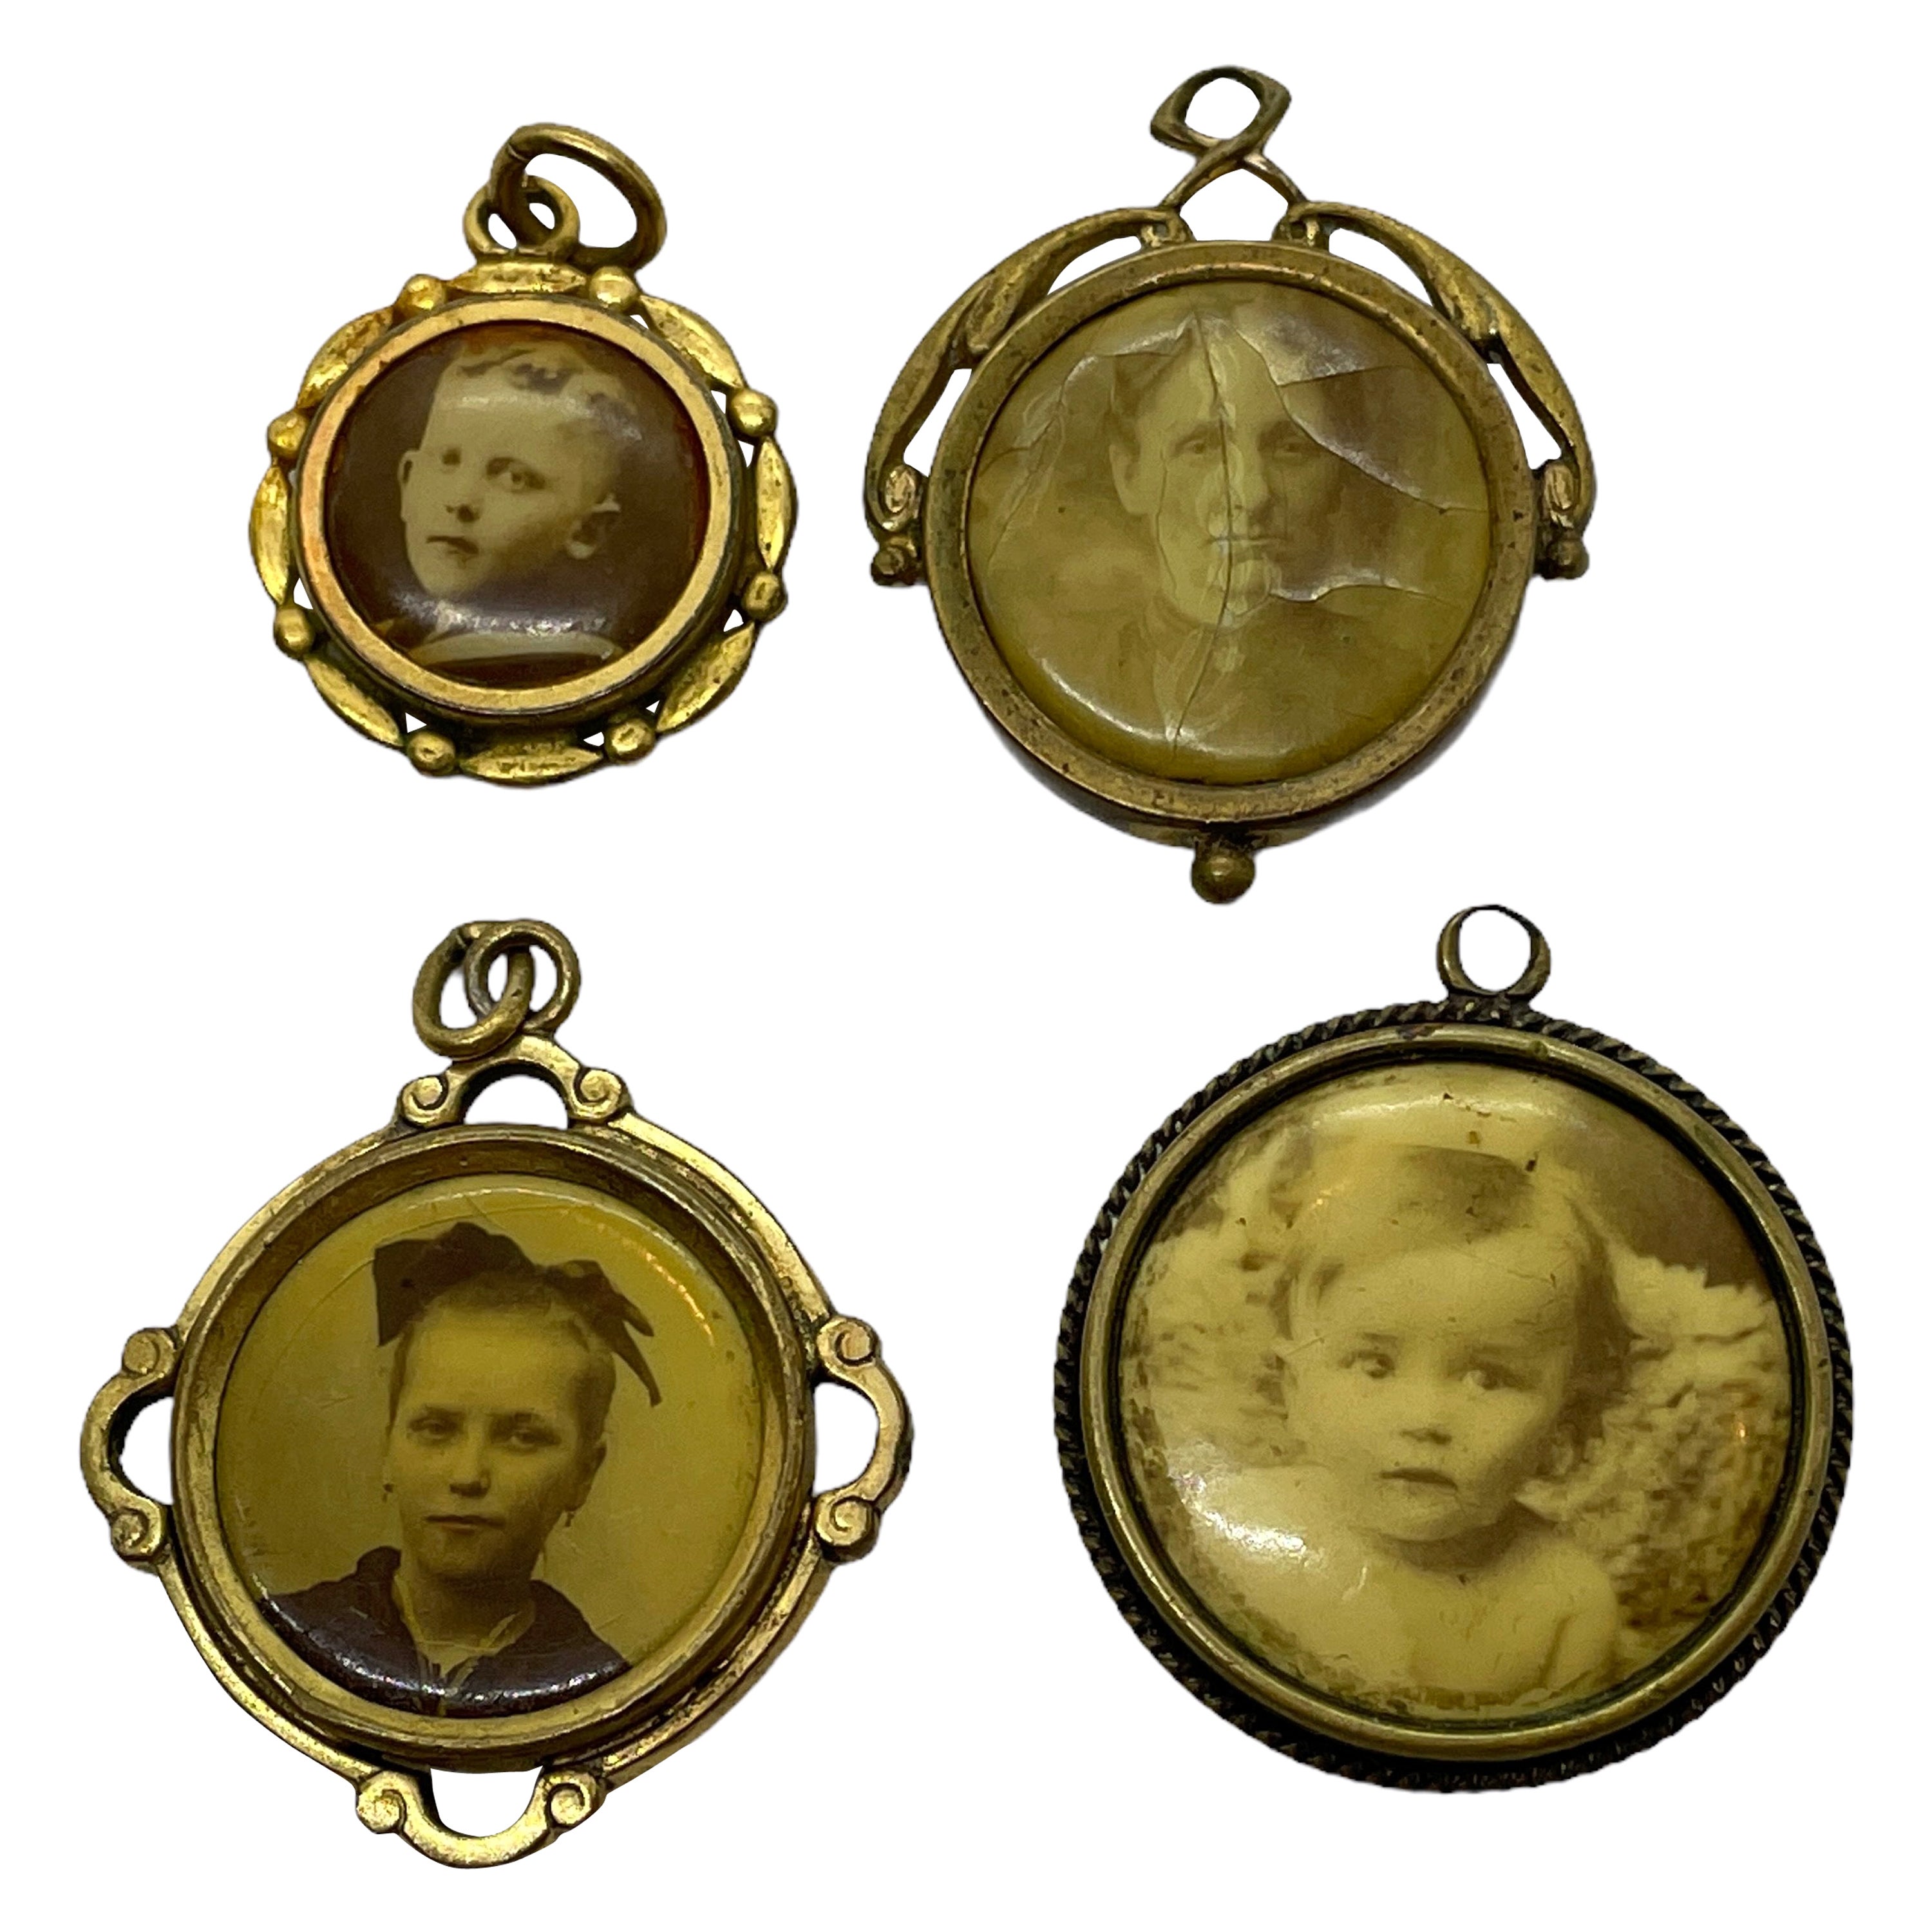 Quatre pendentifs commémoratifs en bronze doré anciens de style Art nouveau allemand avec bijoux, années 1900